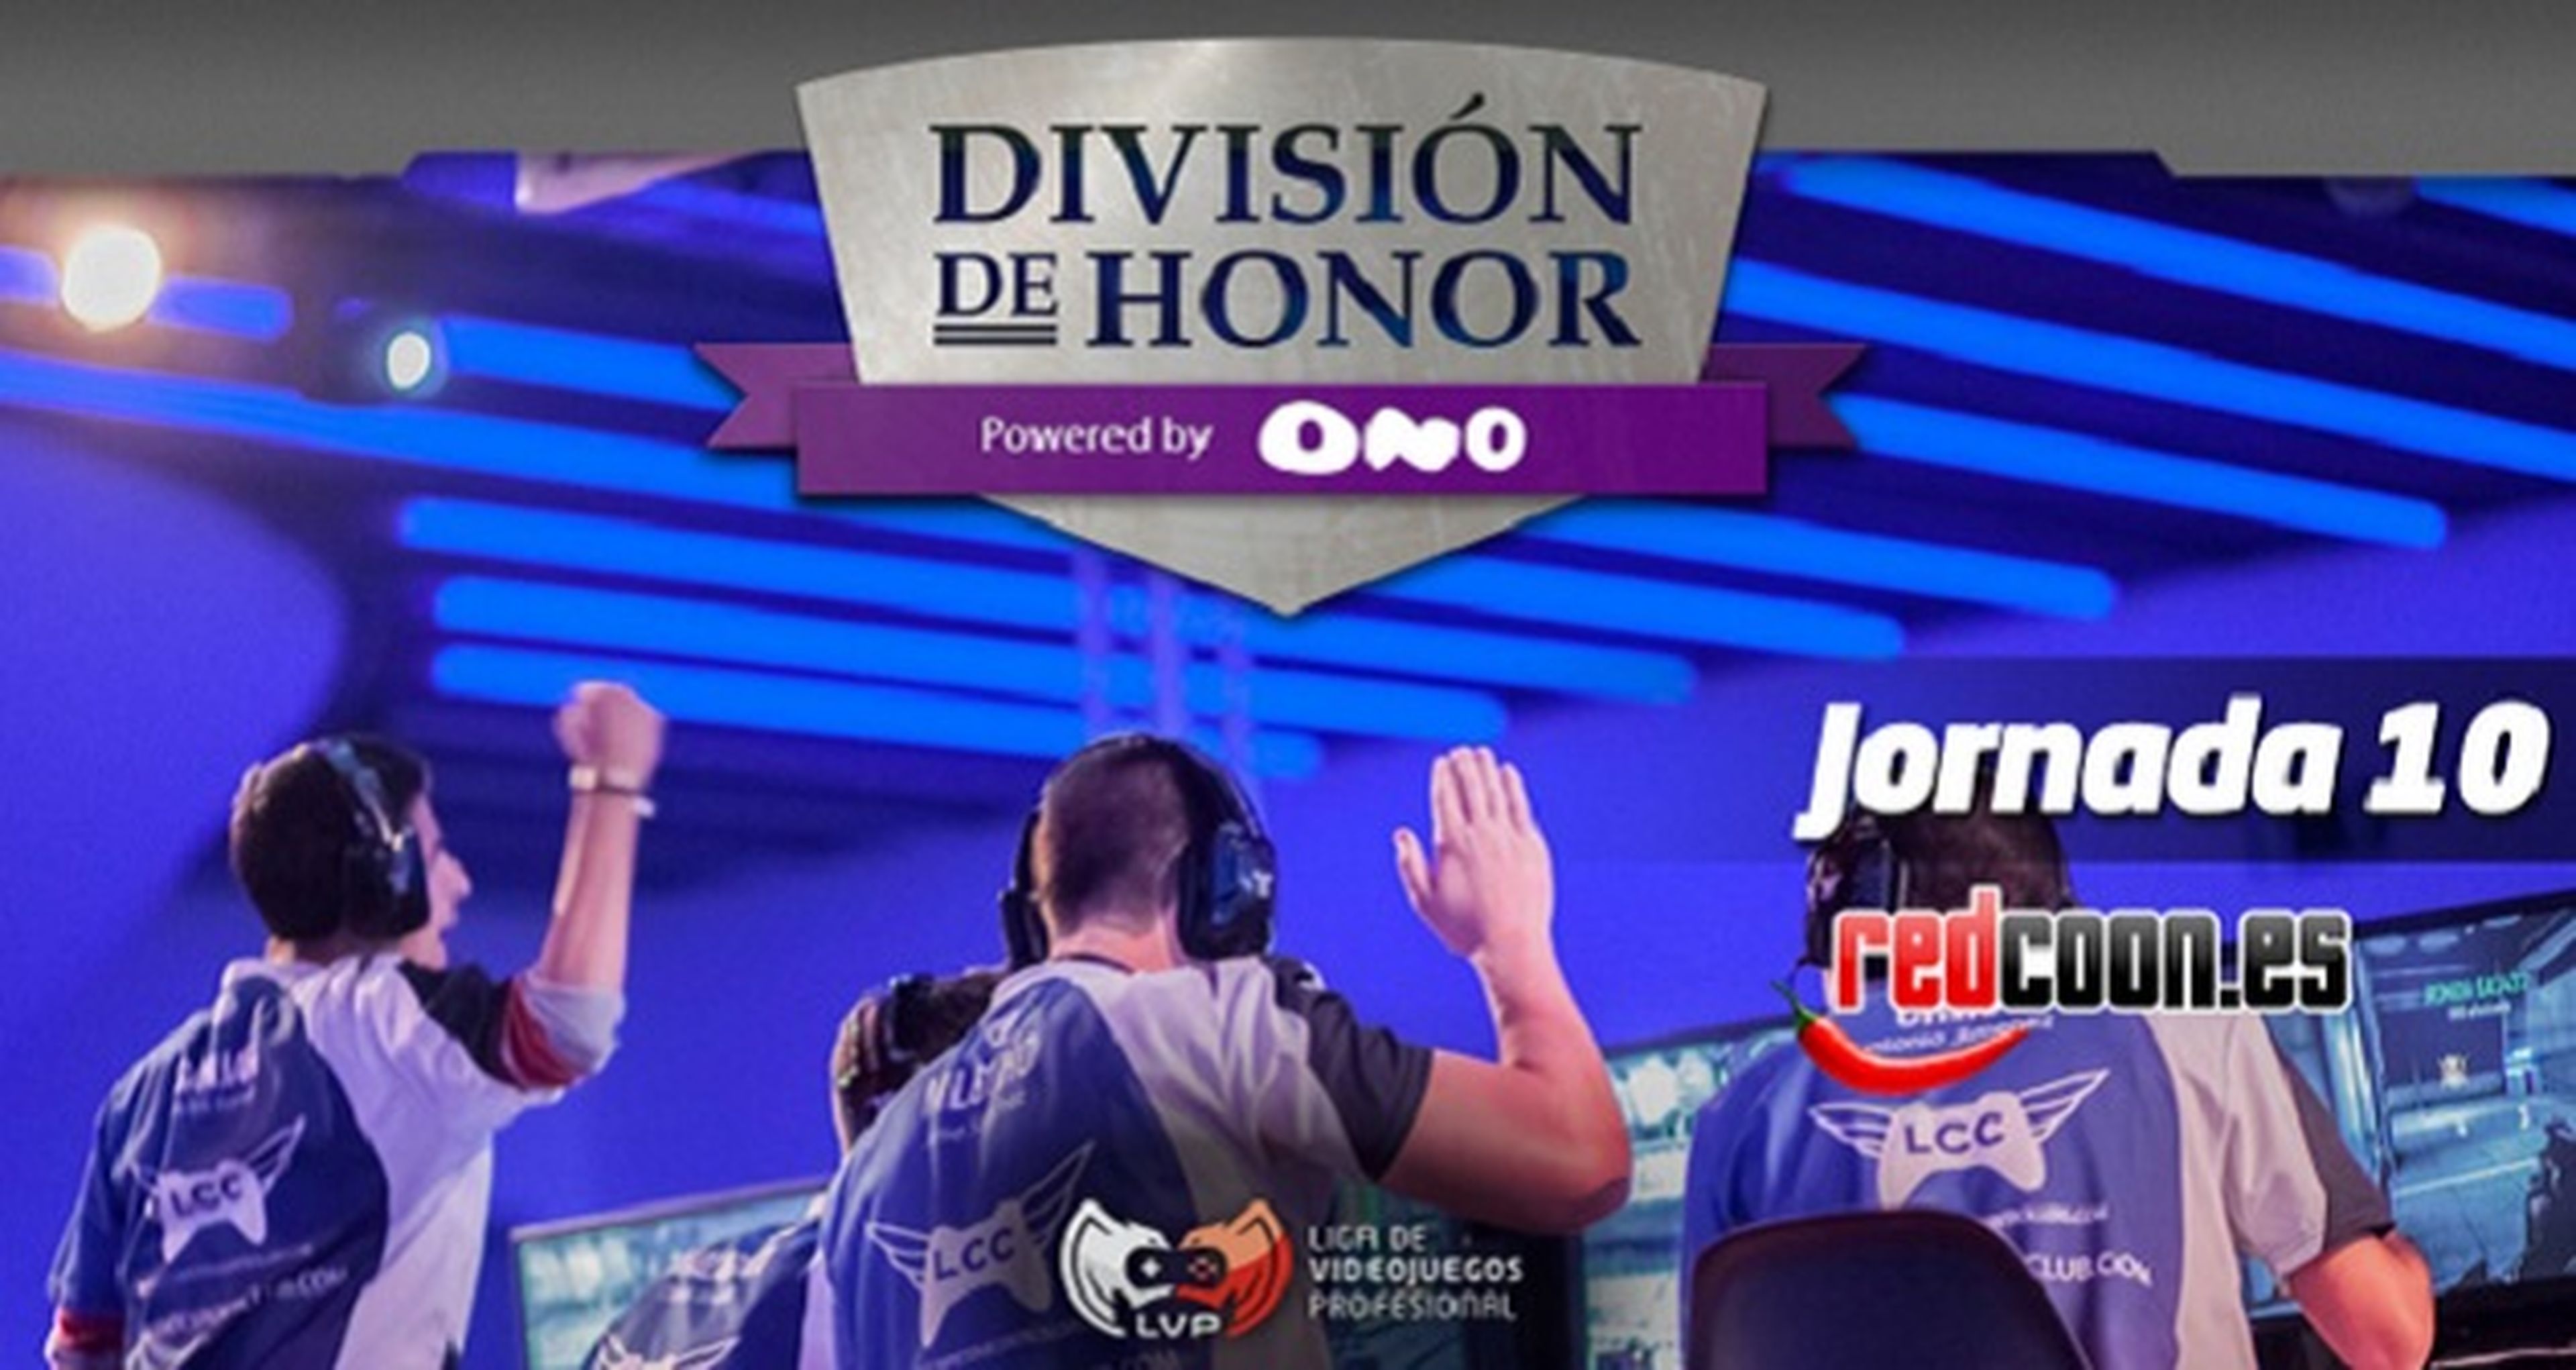 La previa: Jornada 10 de la División de Honor by Ono